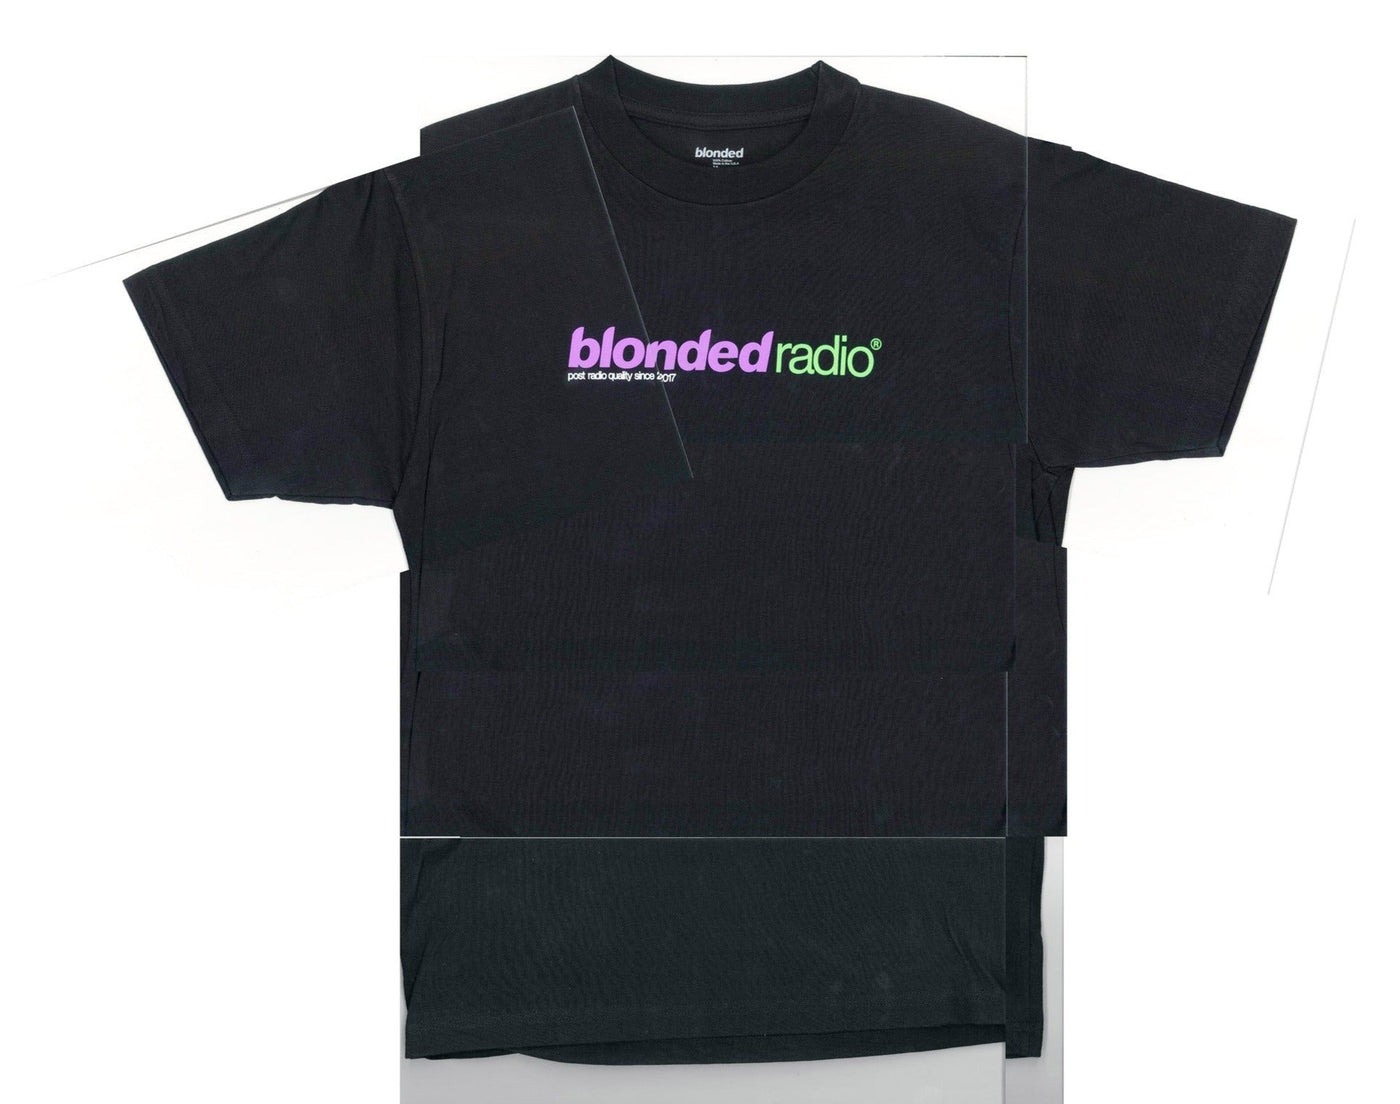 Frank Ocean Blonded Radio New Classic Logo T-shirt Black/Riddler ...